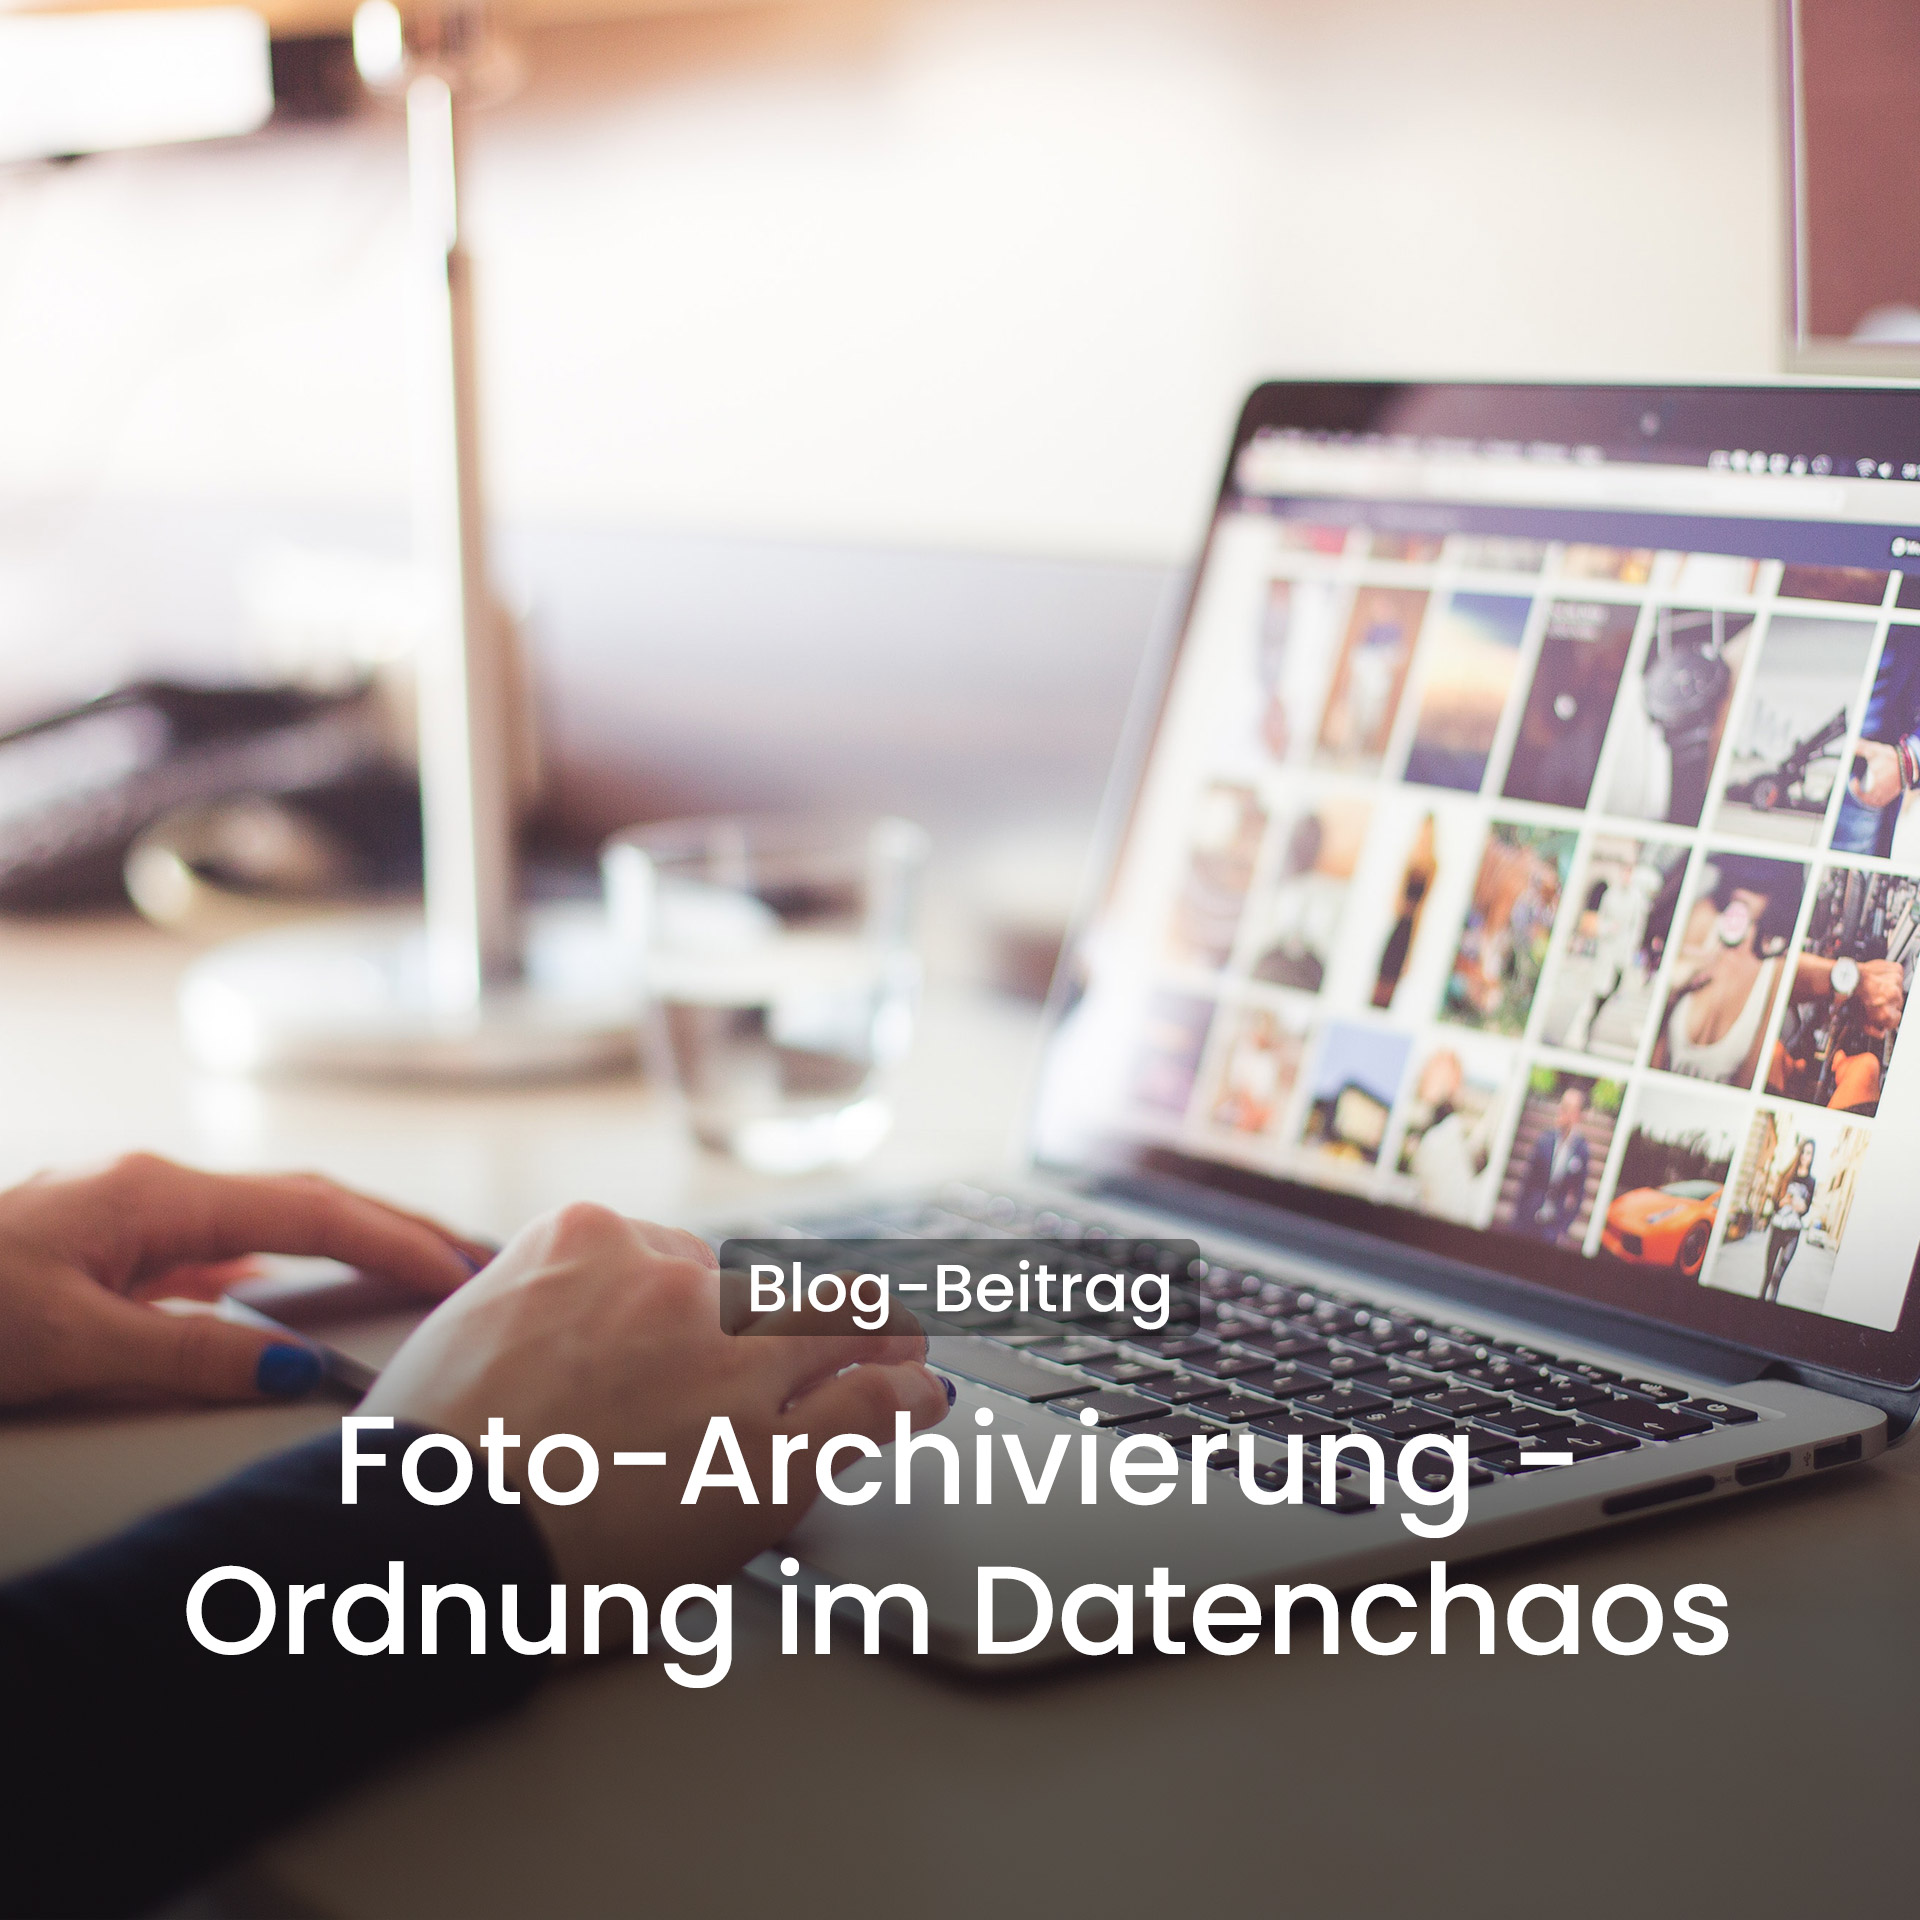 Foto-Archivierung - Ordnung im Datenchaos